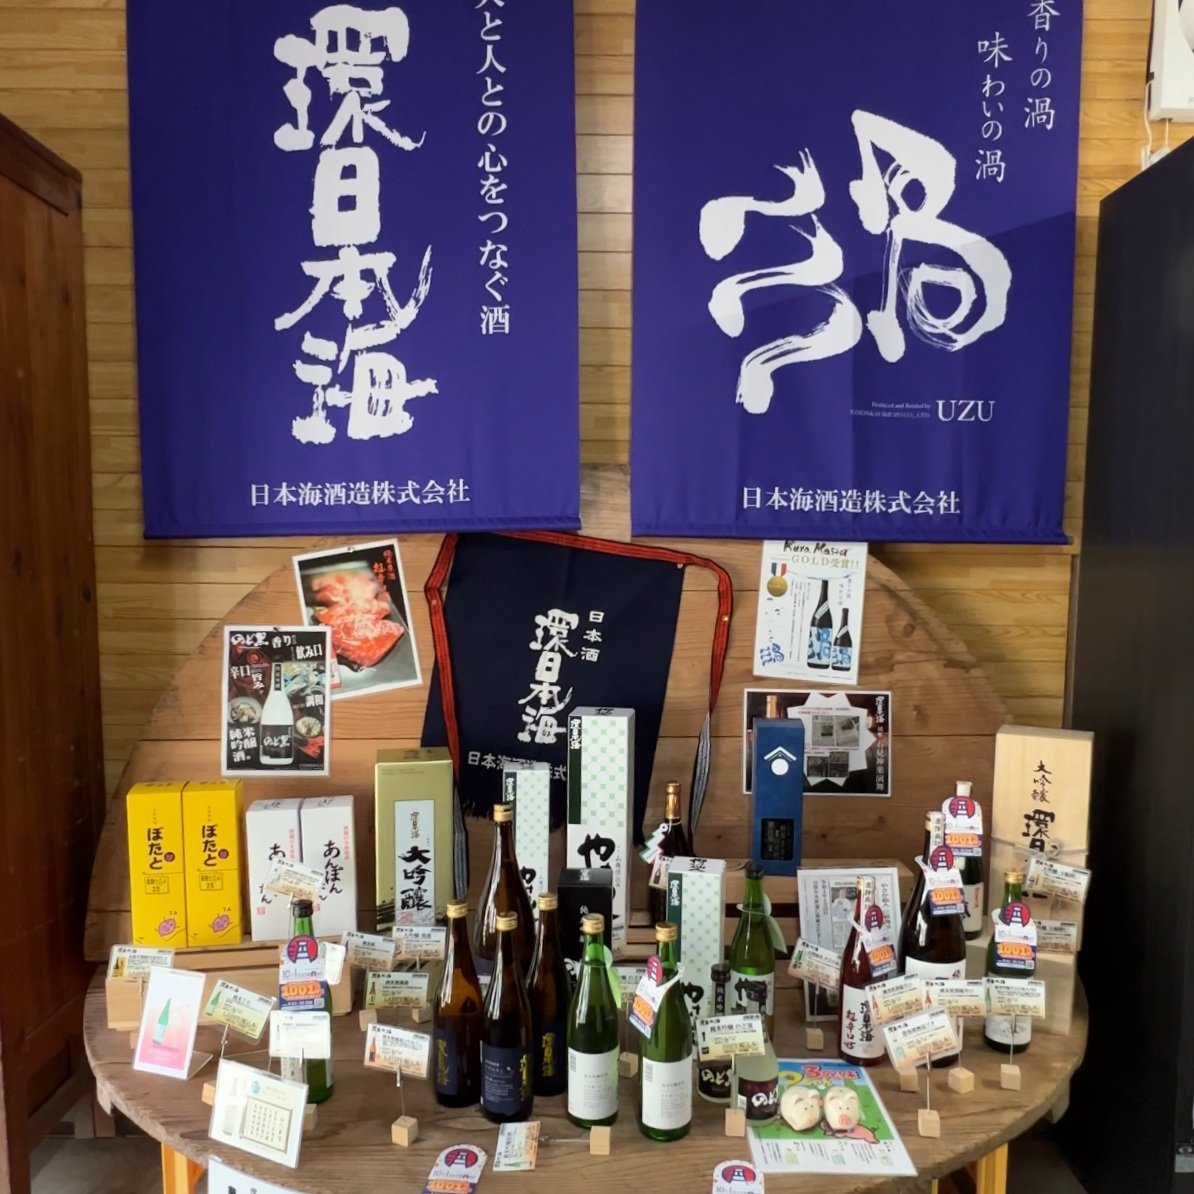 Nihonkai Shuzo's products